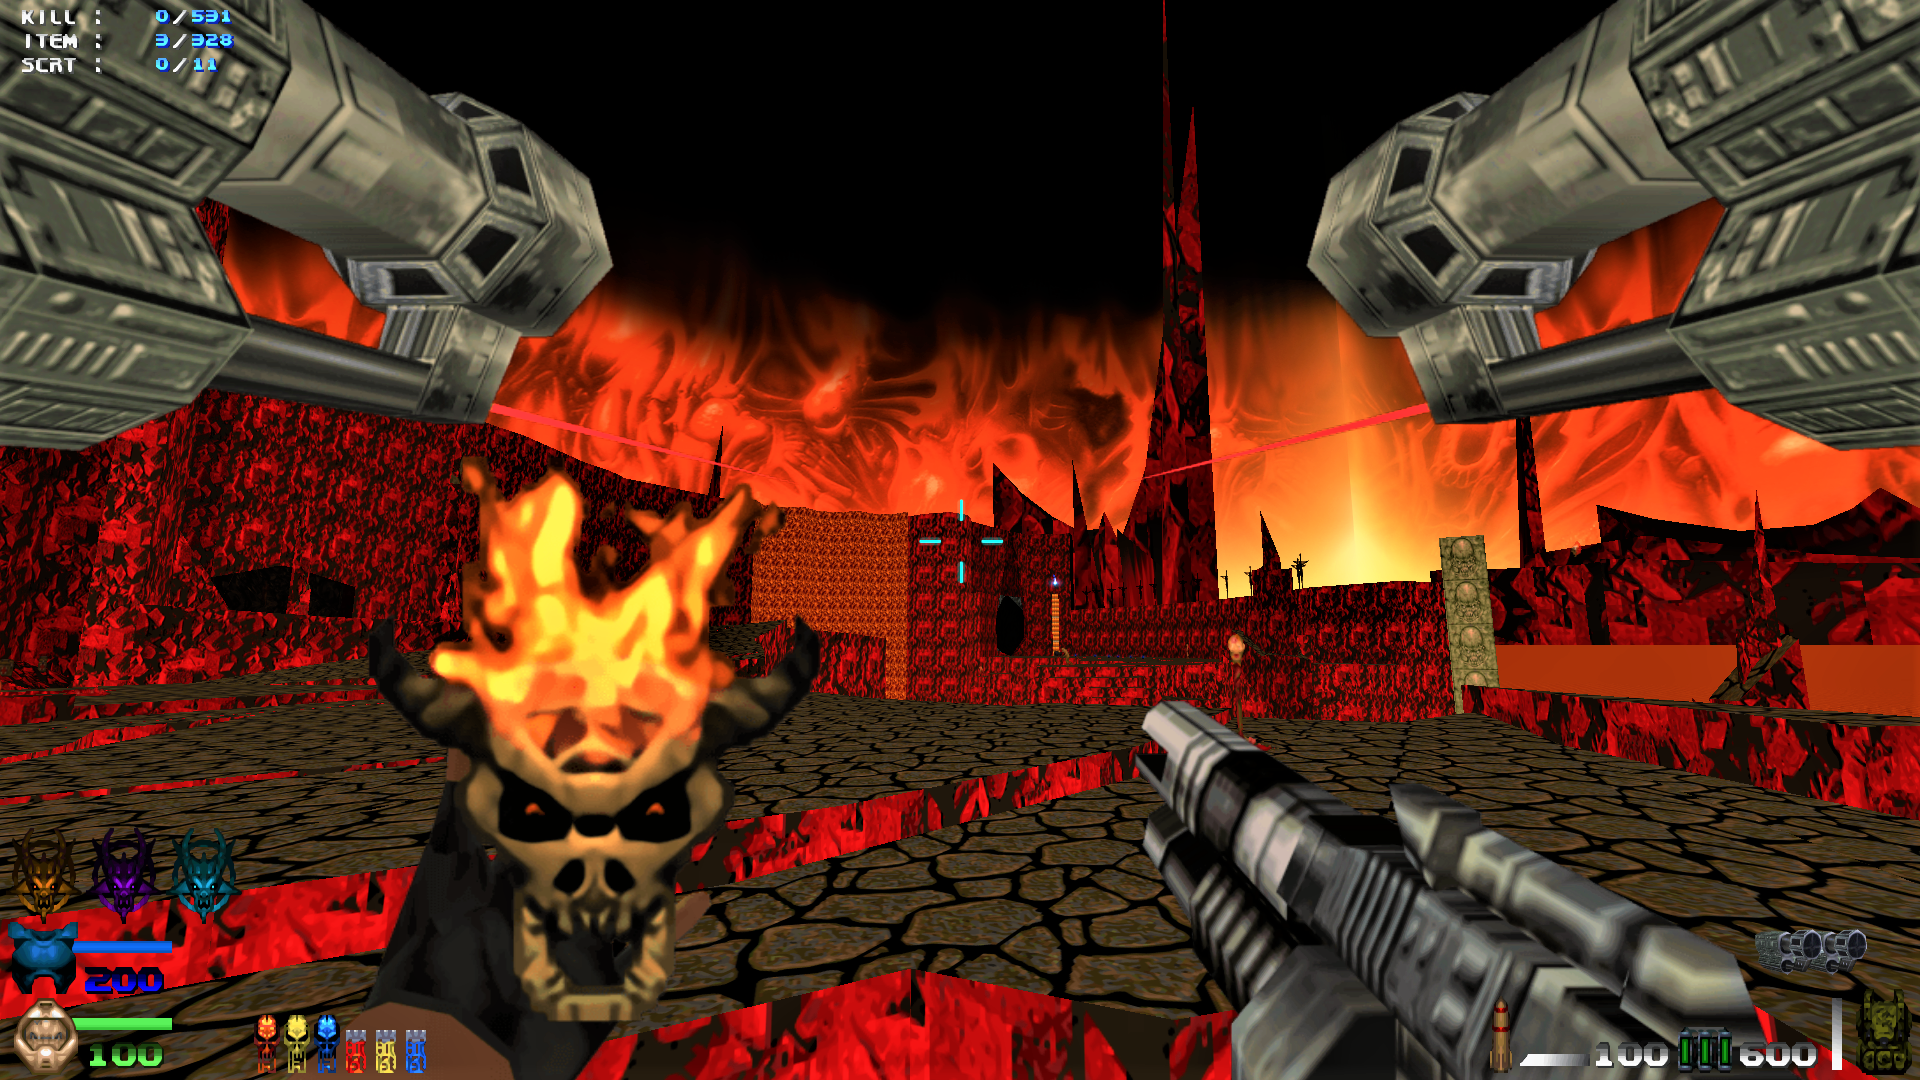 T64 Weapons image - T-64 : U l t i m a t e P a c k mod for Doom II.